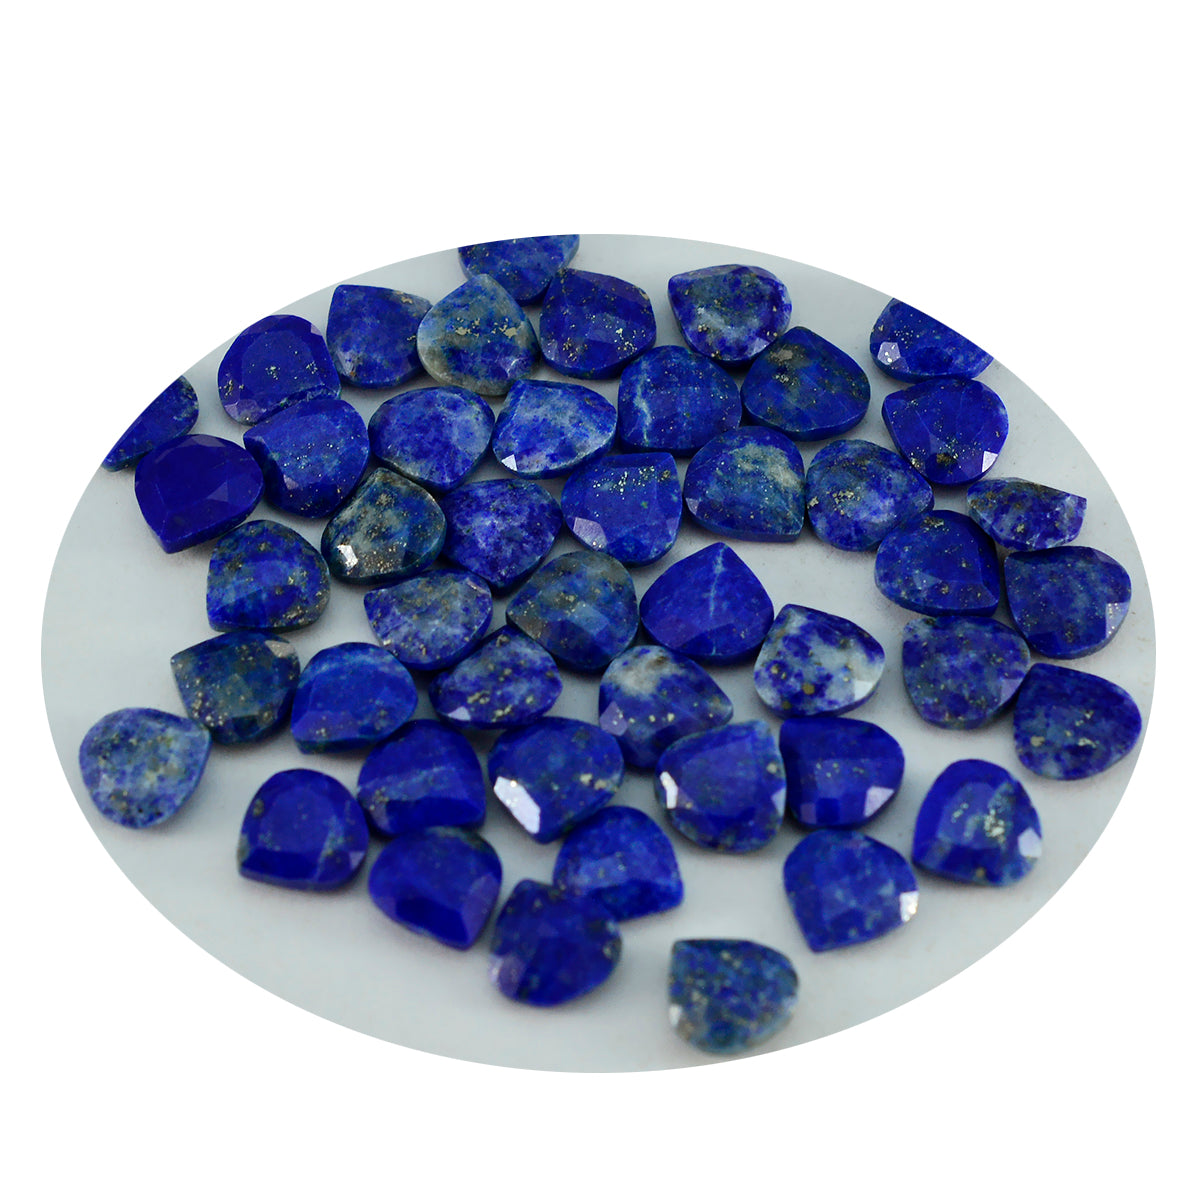 Riyogems 1 pièce de lapis-lazuli bleu véritable à facettes 7x7mm en forme de cœur, pierres précieuses en vrac de qualité fantastique